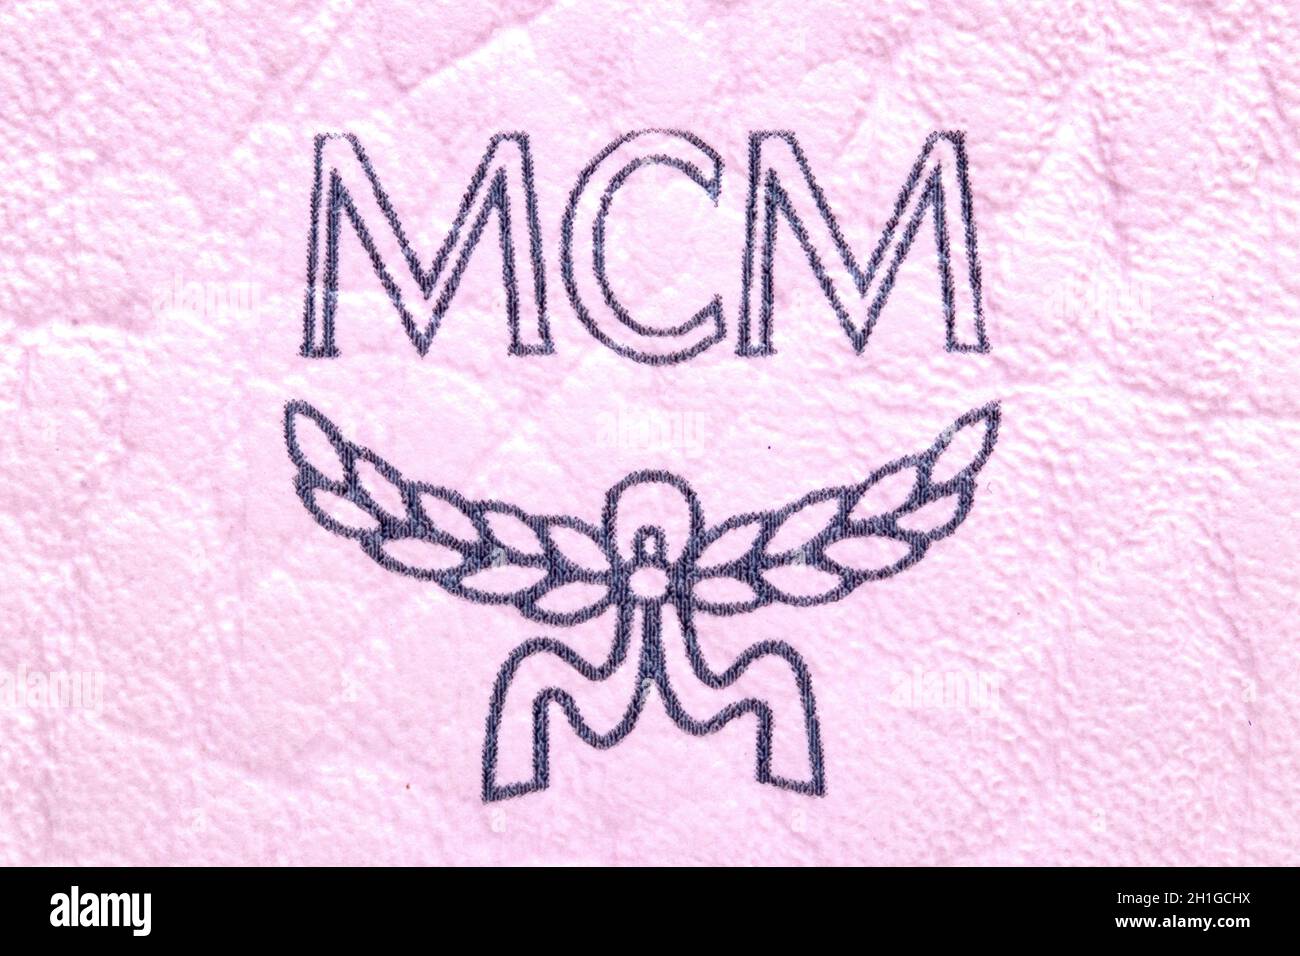 Berlin, Allemagne – 05 juin 2020. Détail d'un sac à main en cuir rose clair et coûteux affichant le logo de marque MCM de la marque de luxe mode. Macro. Banque D'Images